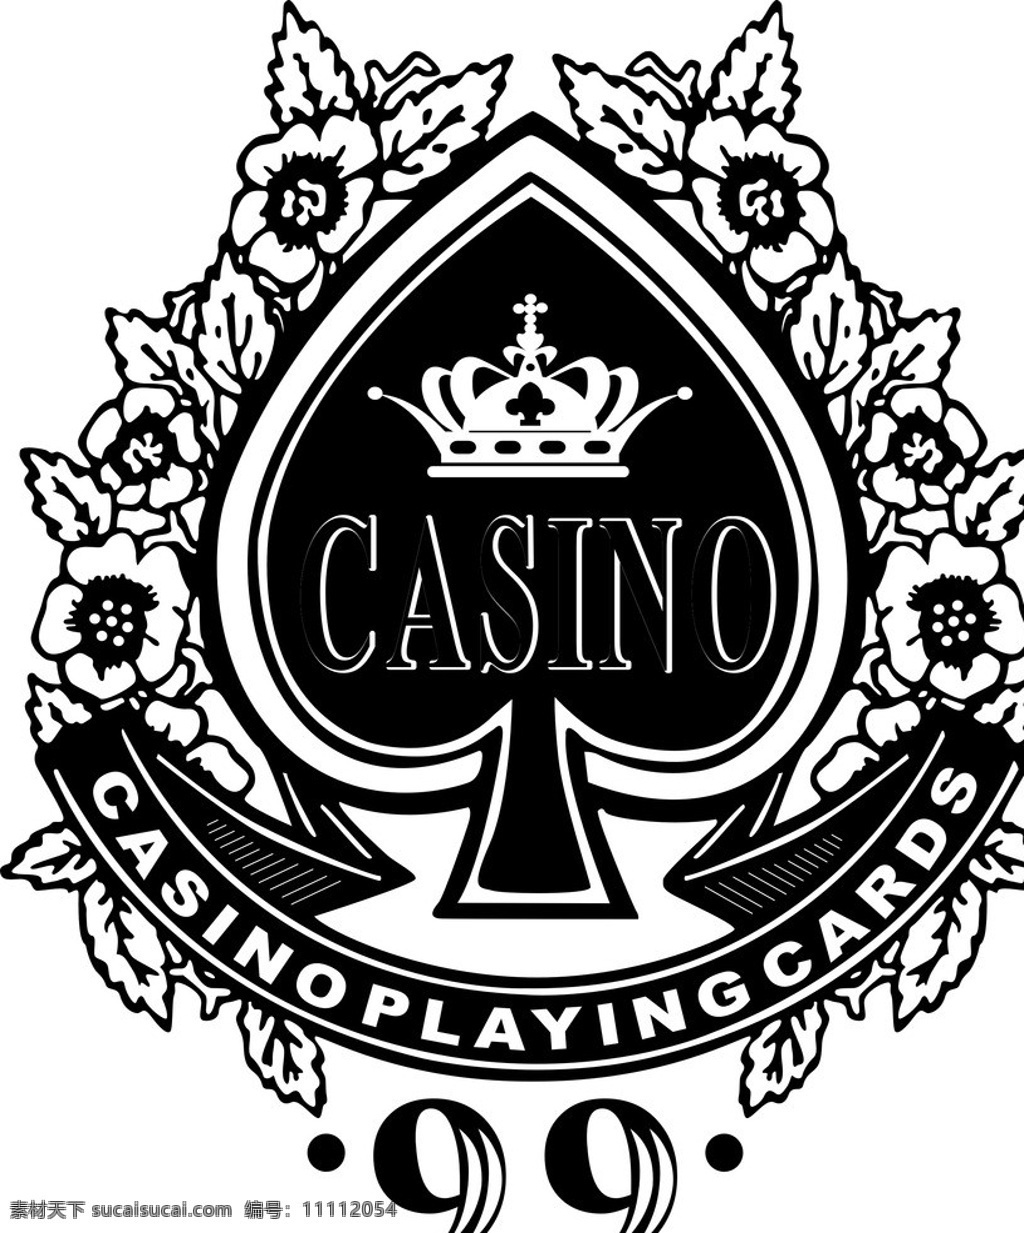 黑桃 99 casino 扑克 扑克素材 休闲娱乐 生活百科 矢量